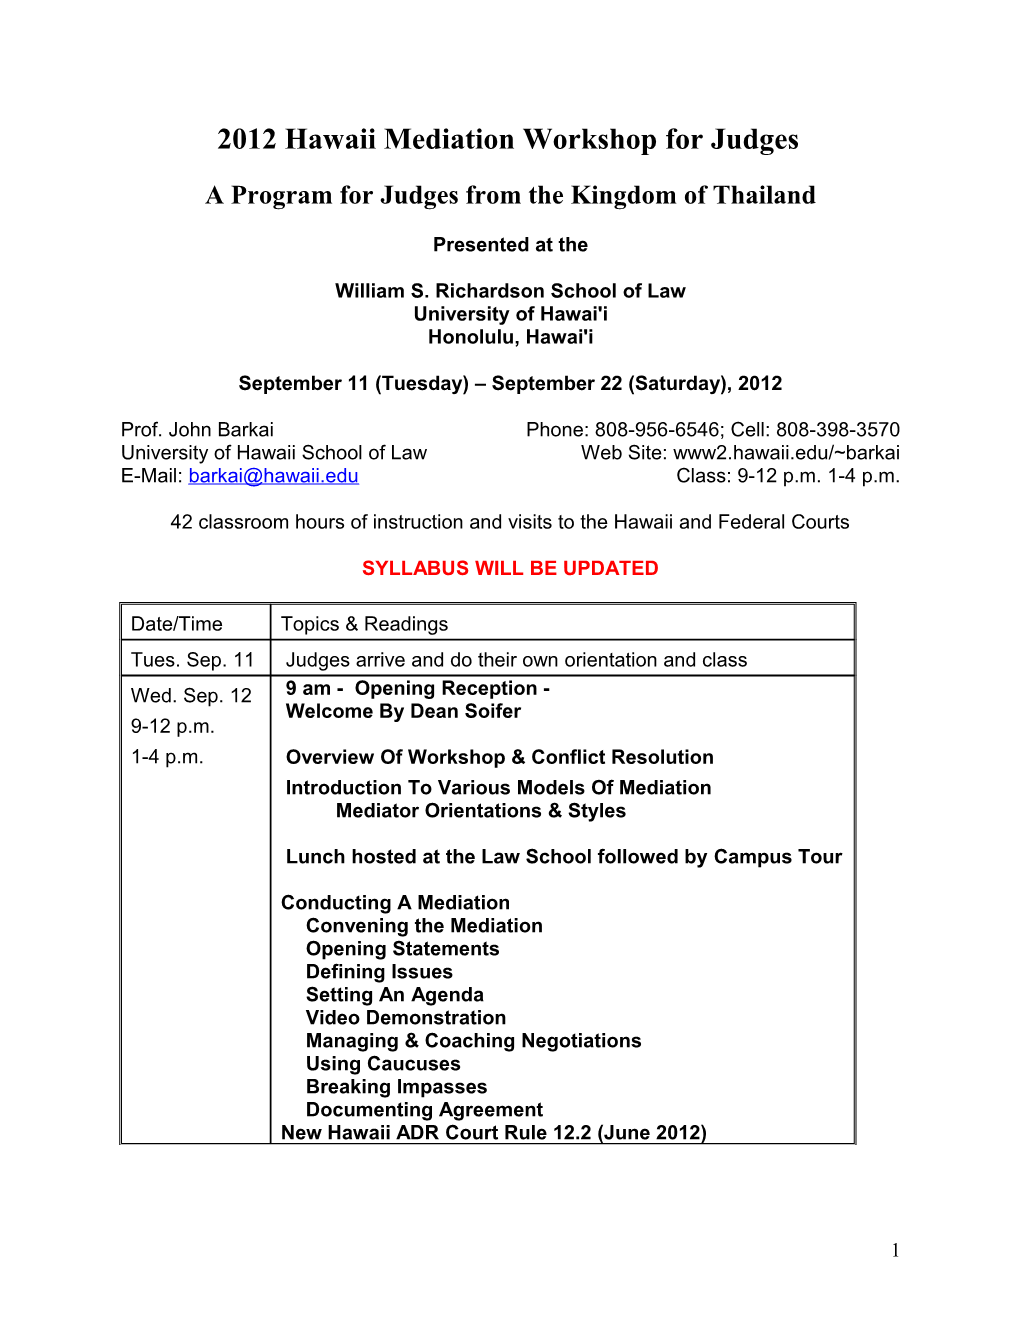 Basic Mediation for Thailand Judges Workshop